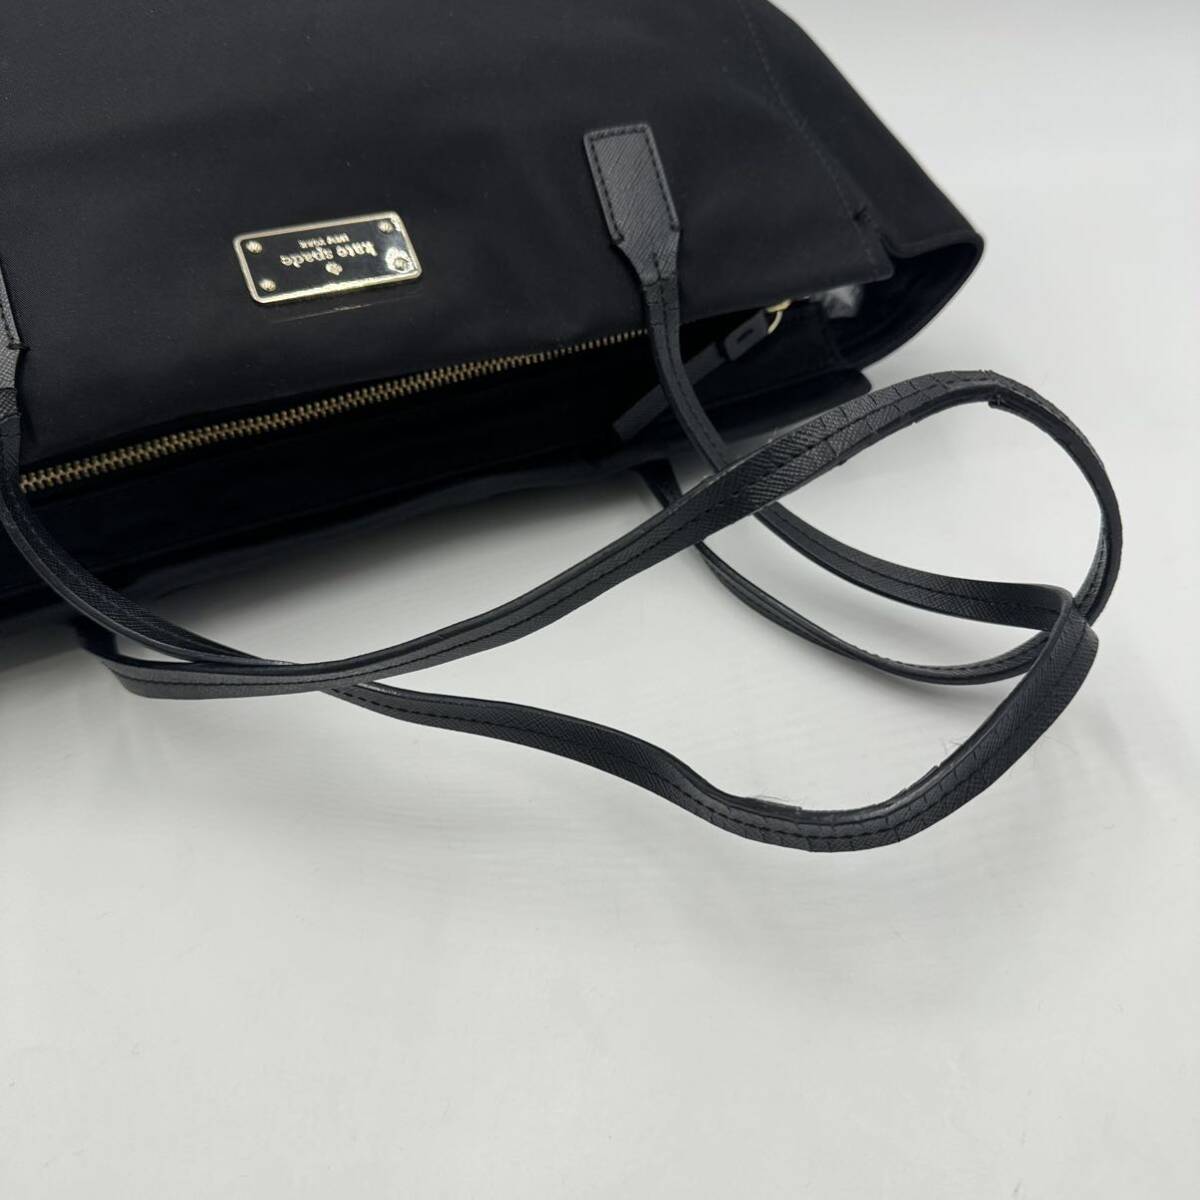 E☆ 人気モデル!! '洗練されたデザイン' KATE SPADE NEW YORK ケイトスペード ショルダー ハンドバッグ 手提げ トートバッグ 黒 BLK 婦人鞄の画像10